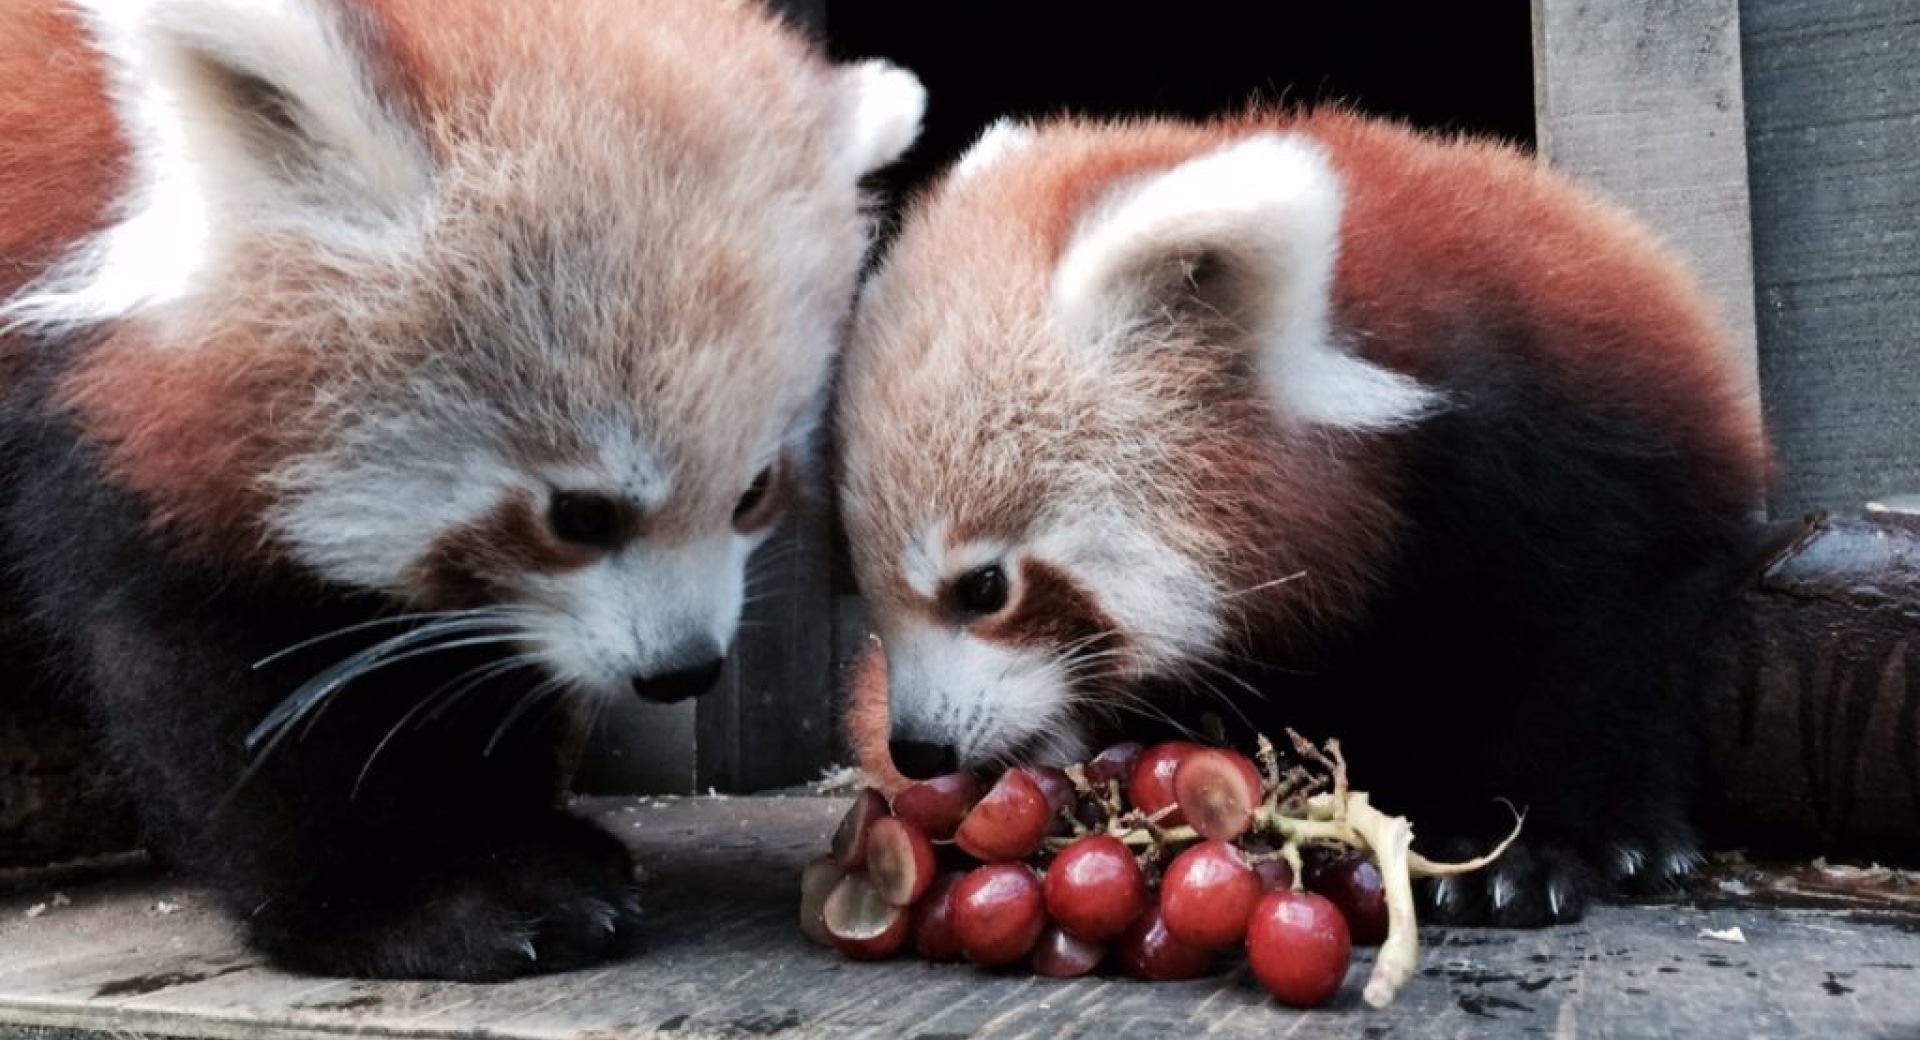 Red Panda Cubs at Hamilton Zoo Have New Names!